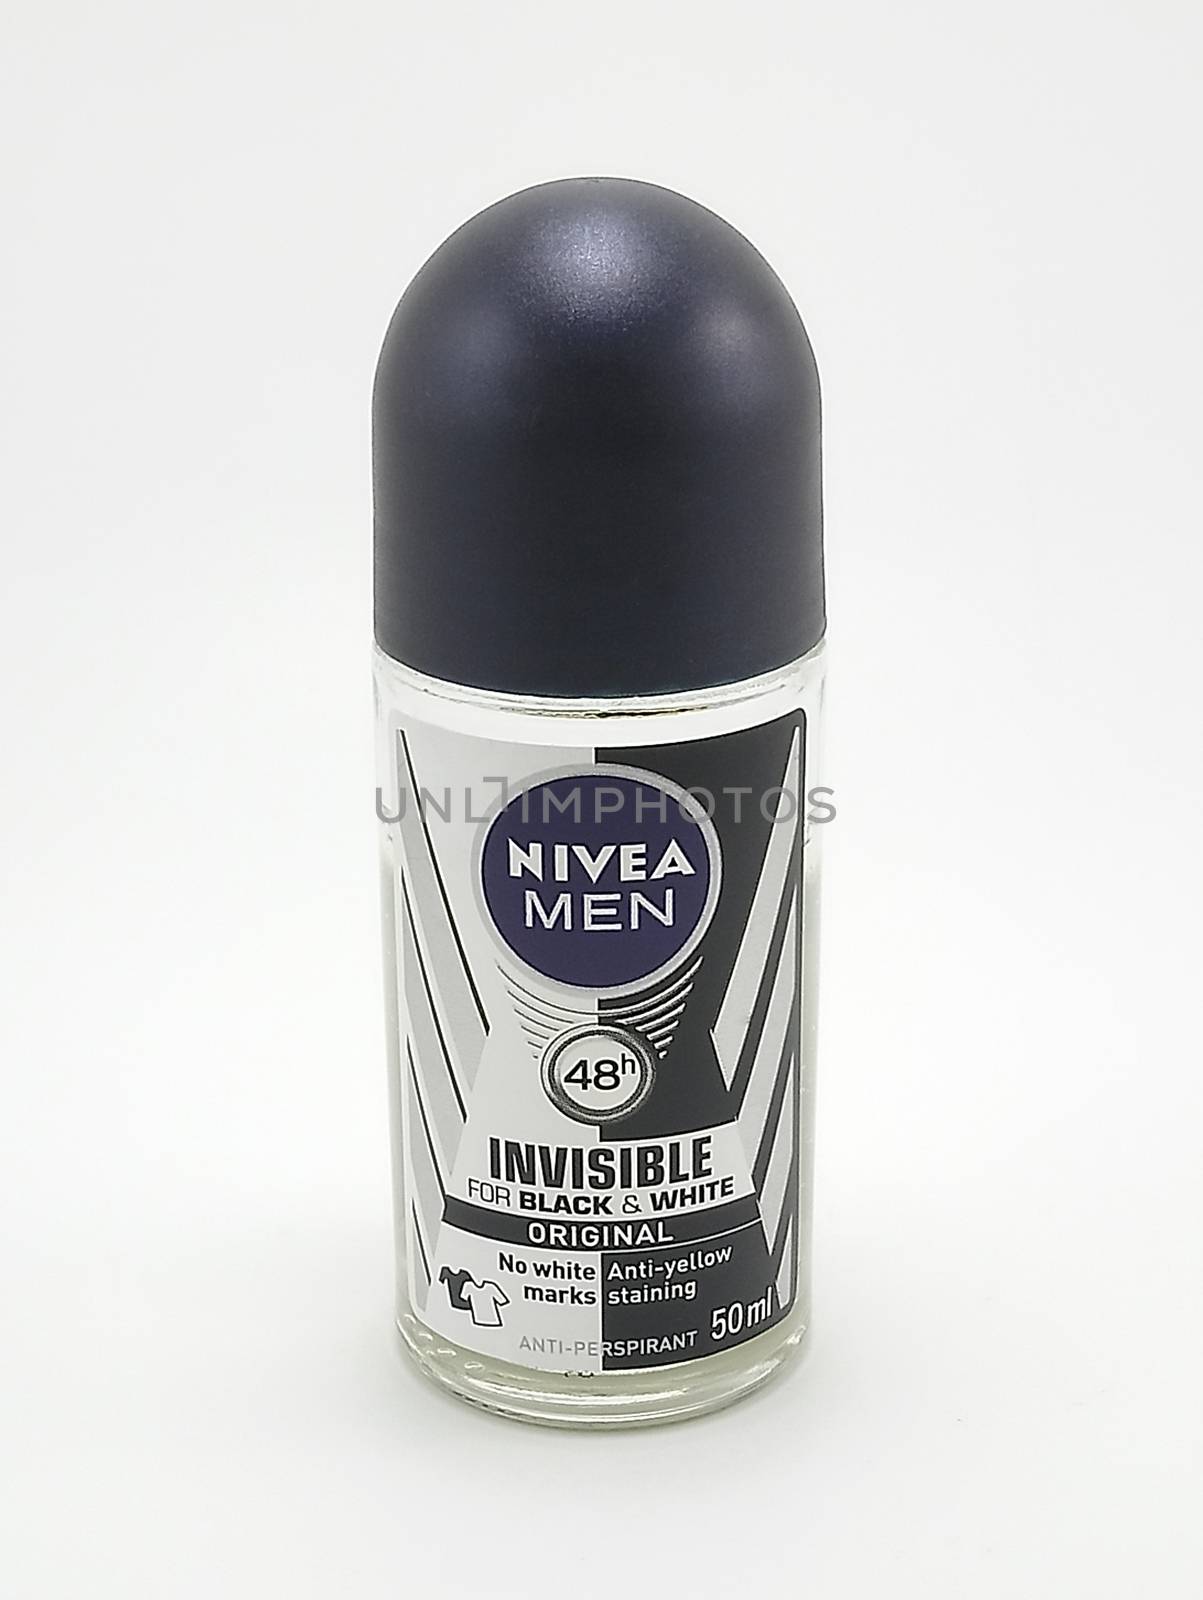 Nivea men invisible for black and white original deodorant in Ma by imwaltersy